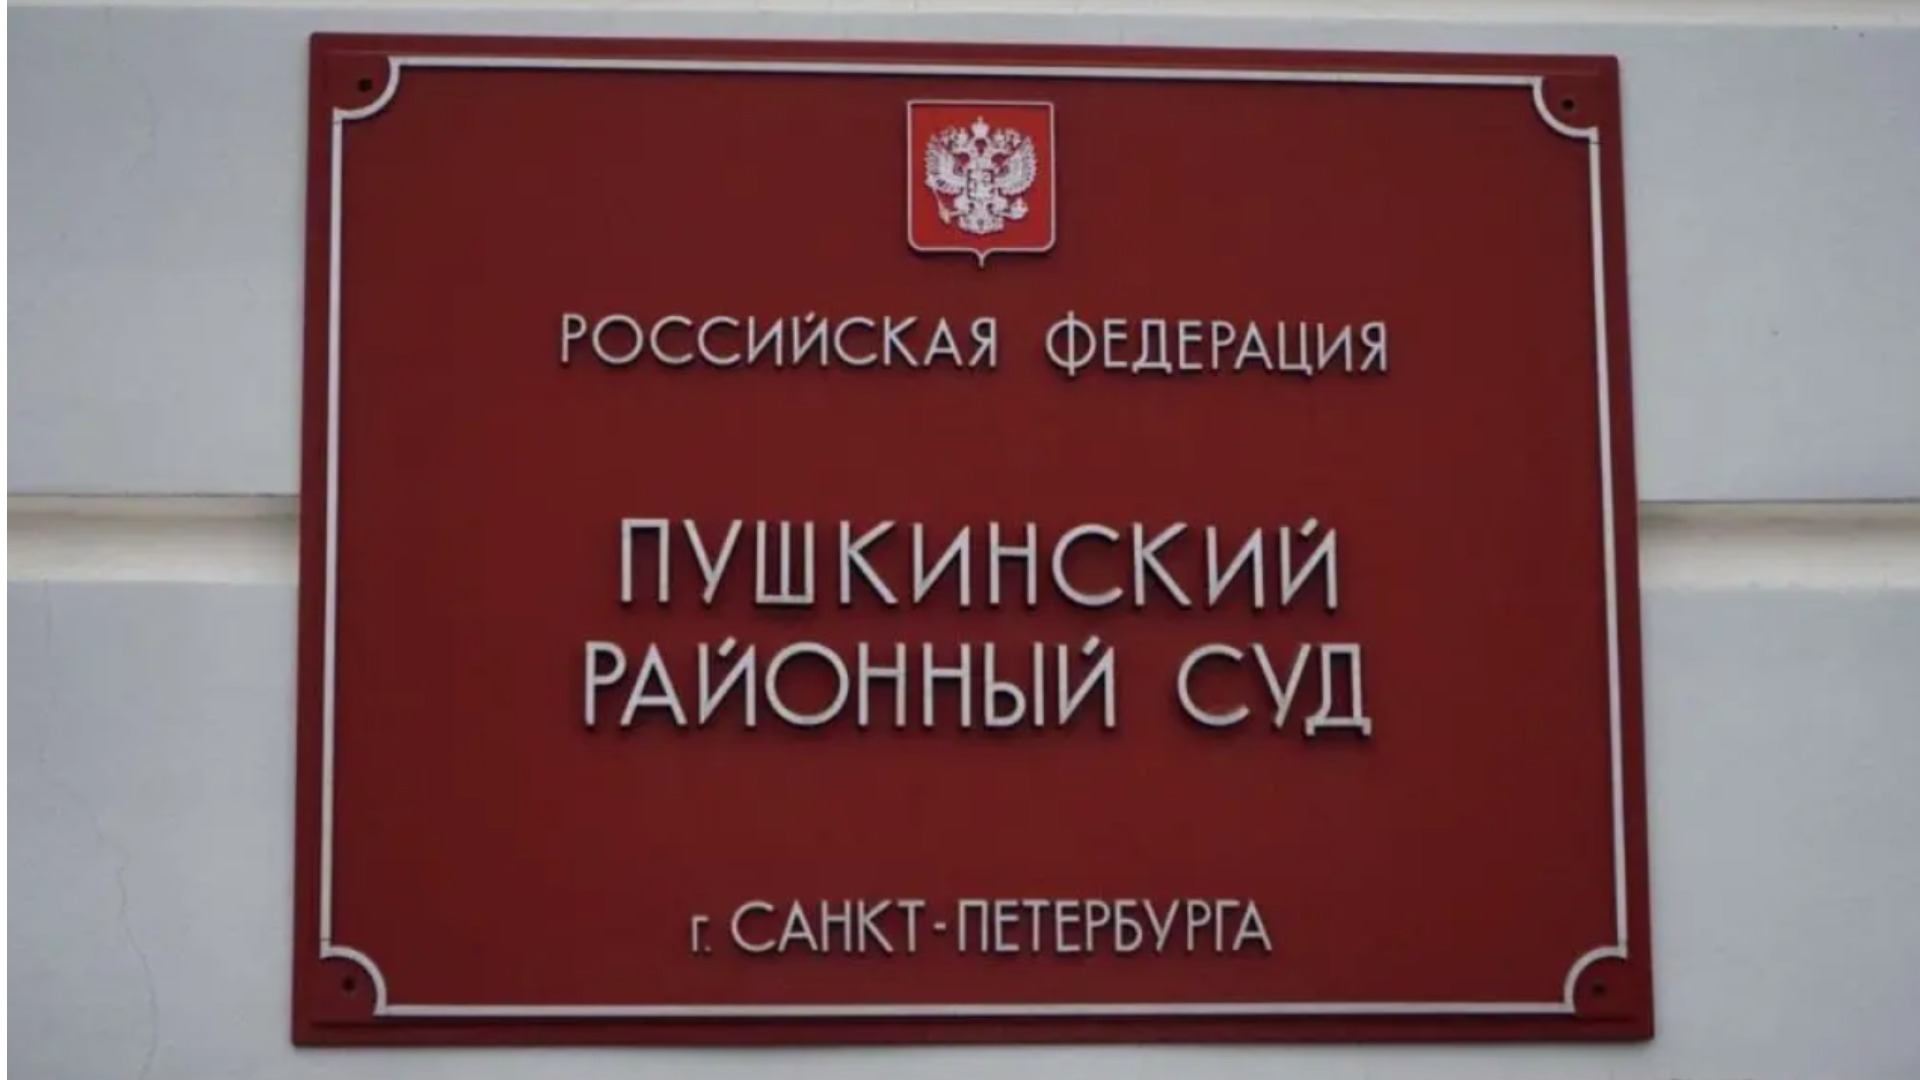 Информация по Пушкинскому районному суду в Спб.